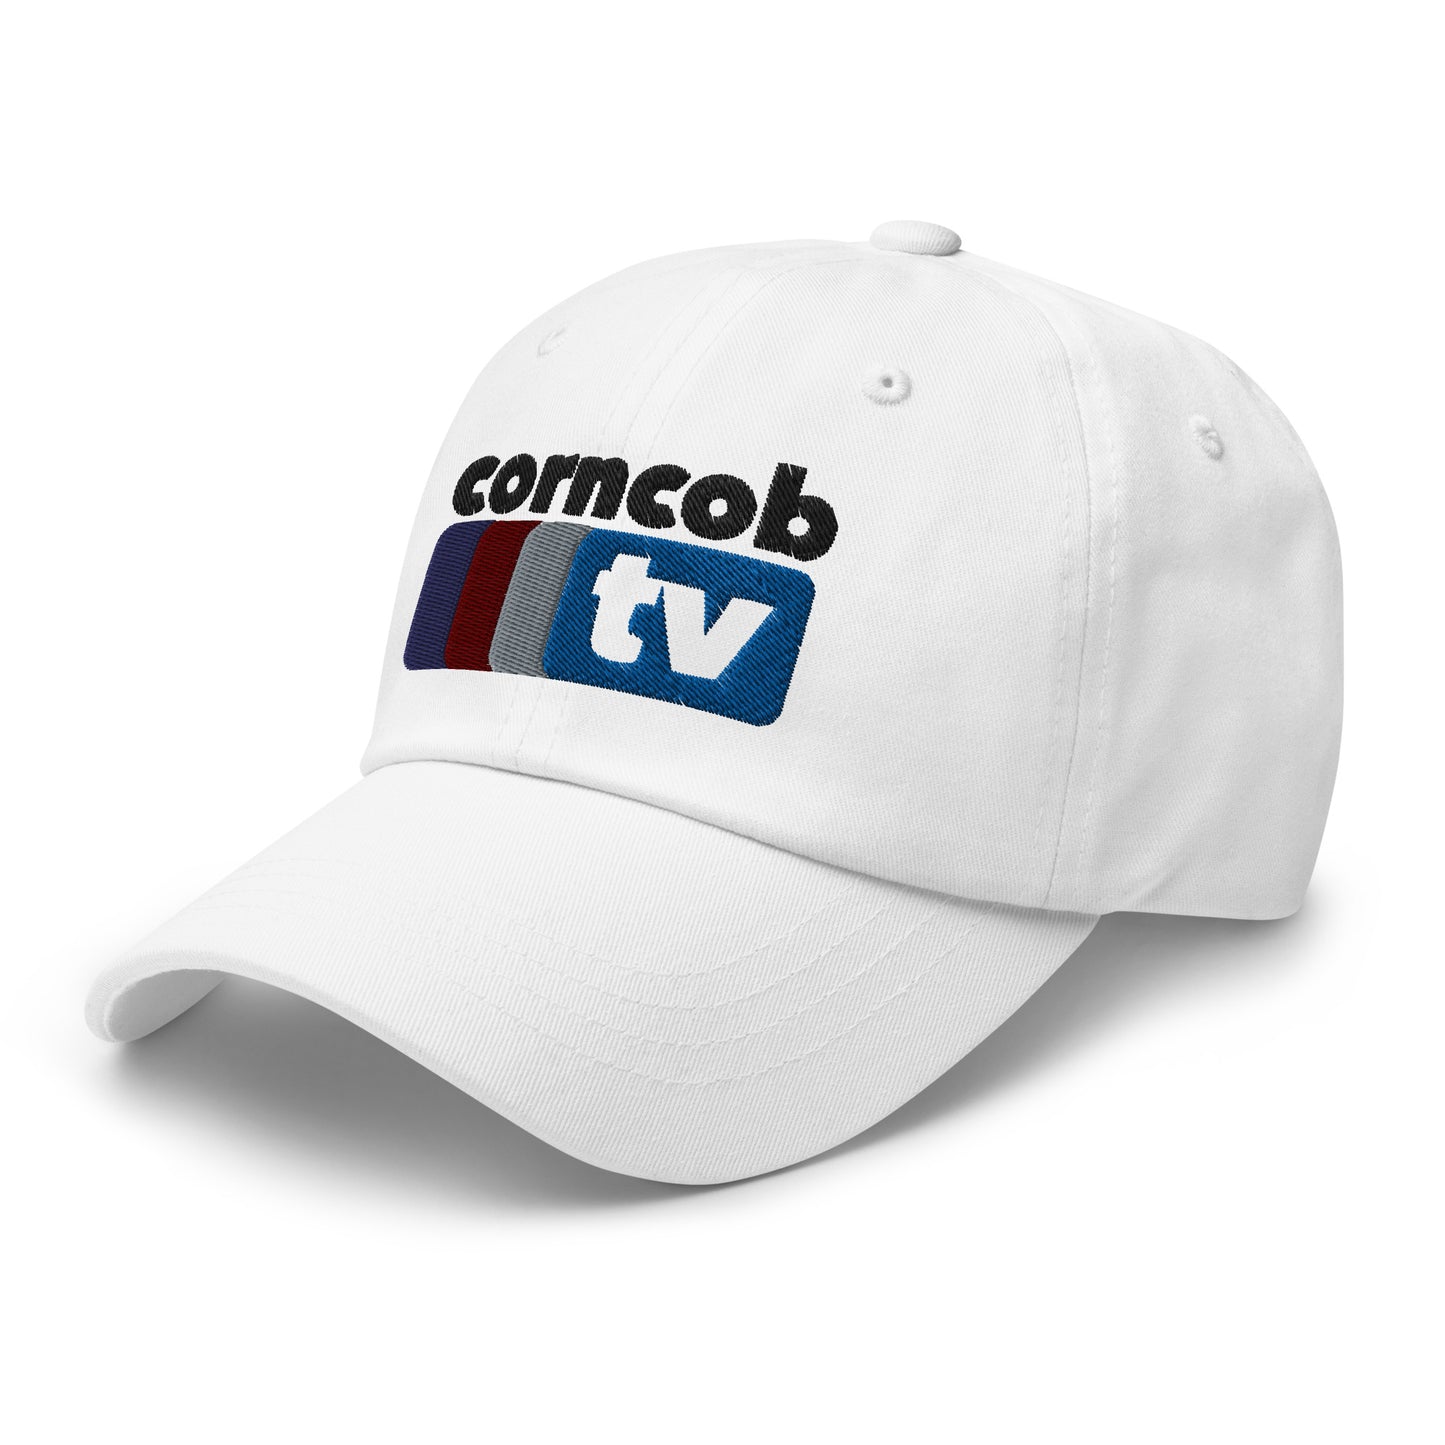 Corncob TV Dad hat